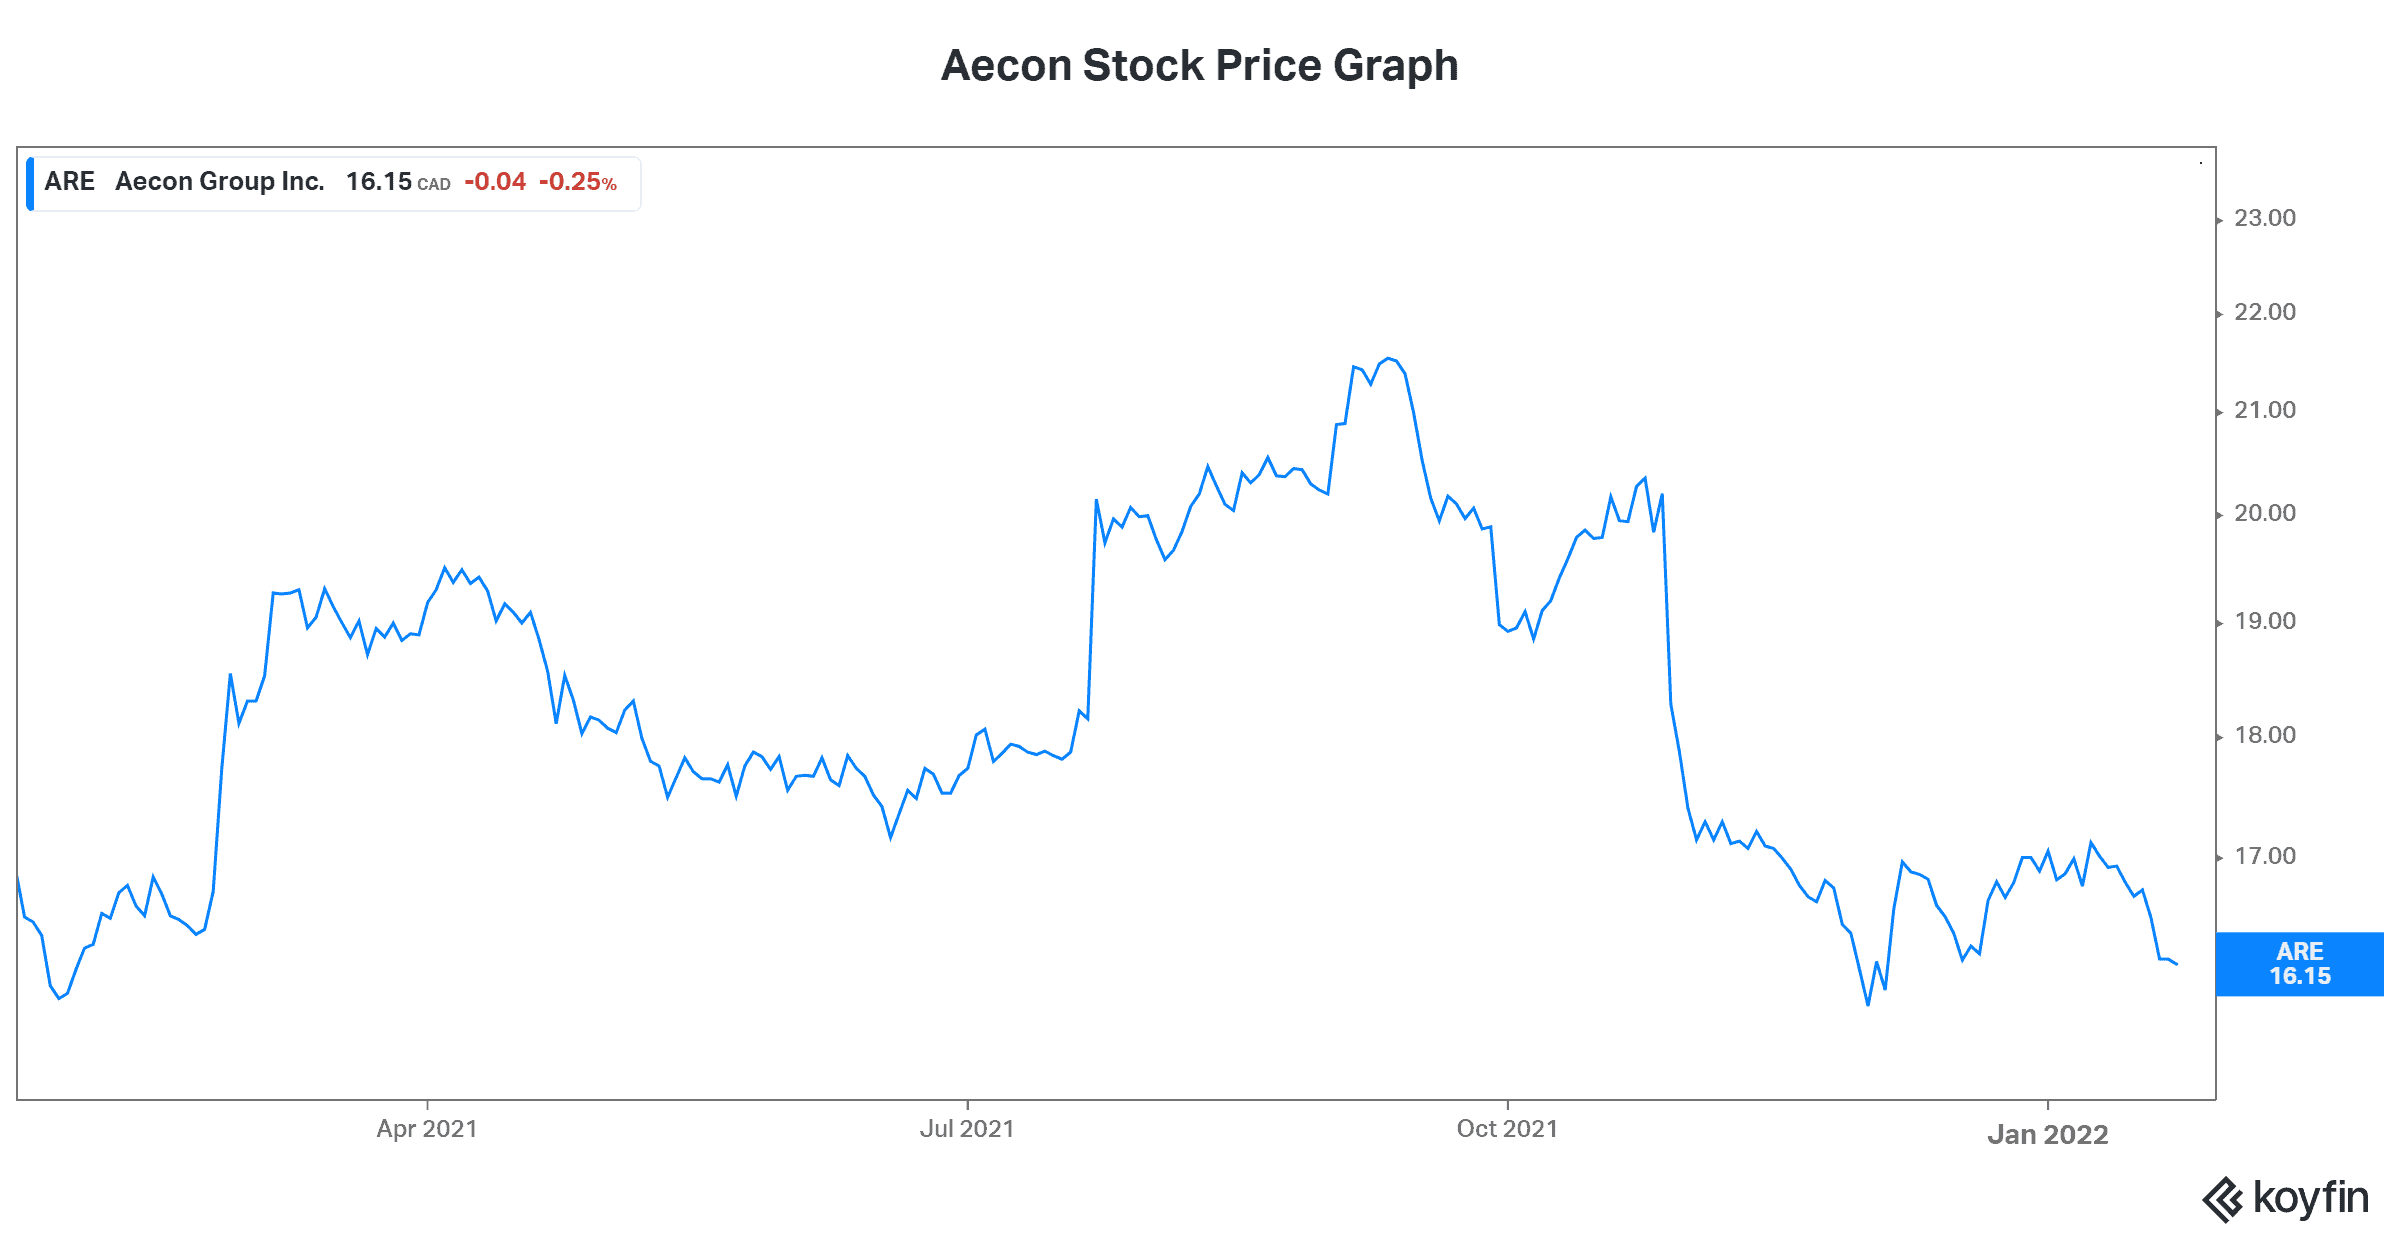 Aecon stock